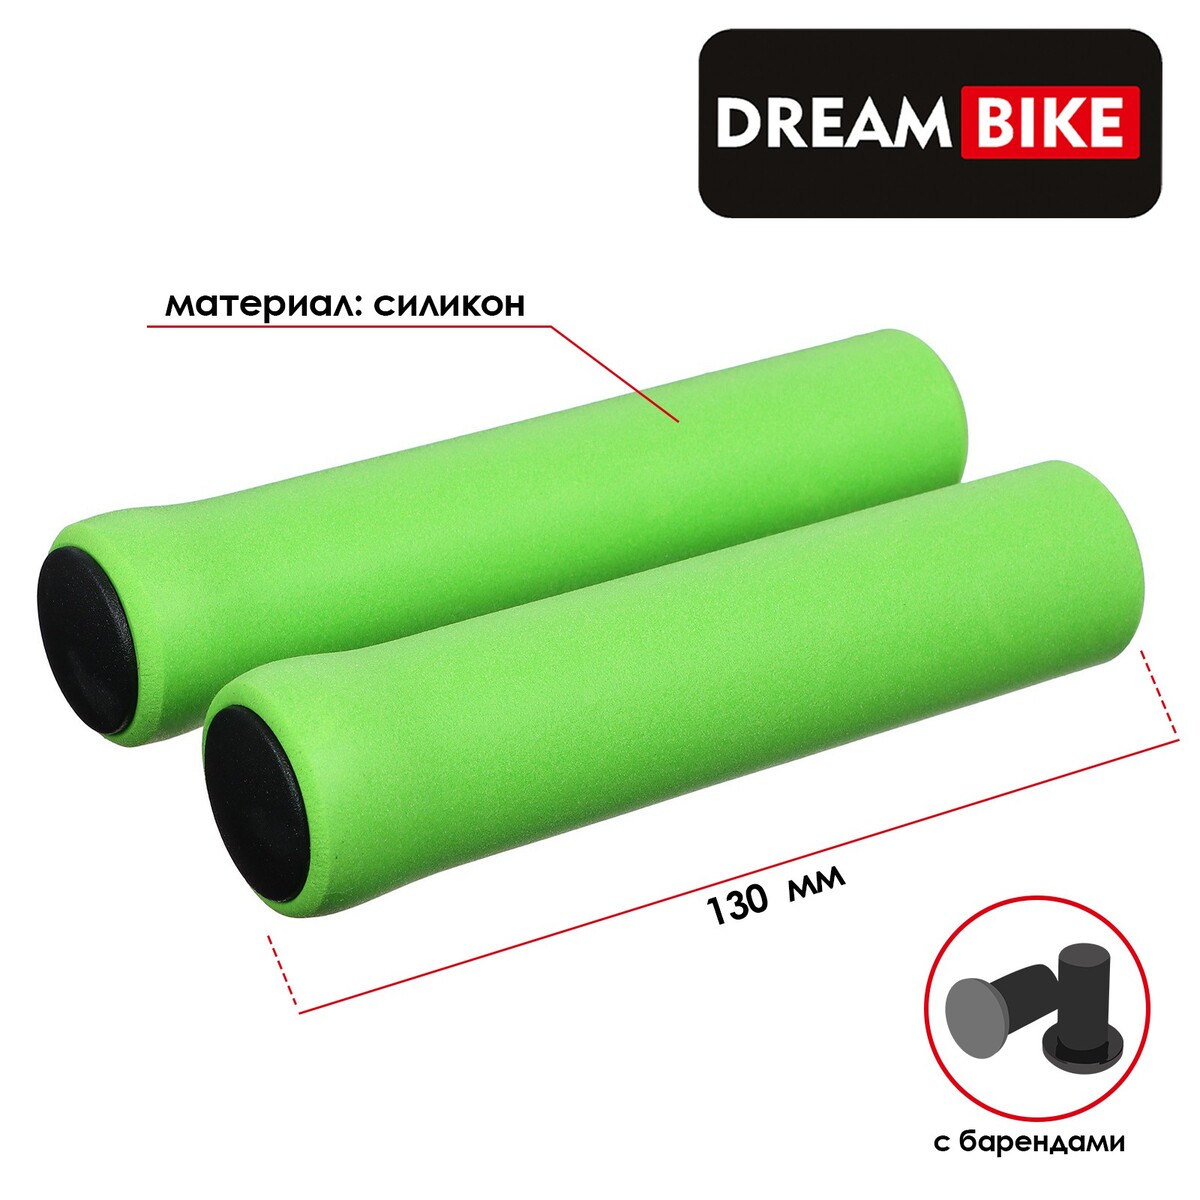 Грипсы 130 мм, dream bike, силиконовые, посадочный диаметр 22,2 мм, цвет зелёный, Dream Bike